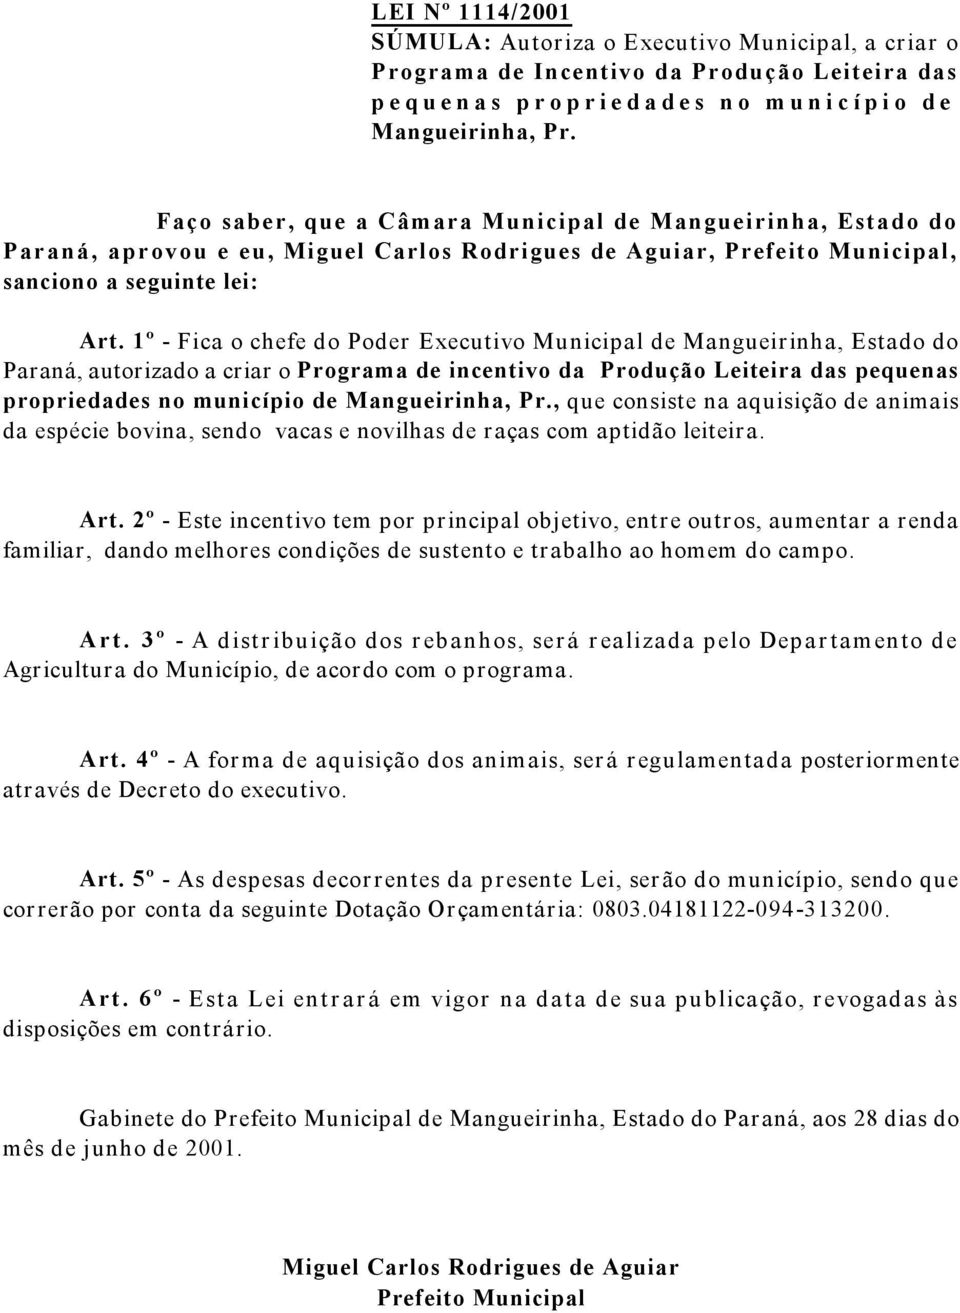 1º - Fica o chefe do Poder Executivo Municipal de Mangueirinha, Estado do Paraná, autorizado a criar o Programa de incentivo da Produção Leiteira das pequenas propriedades no município de